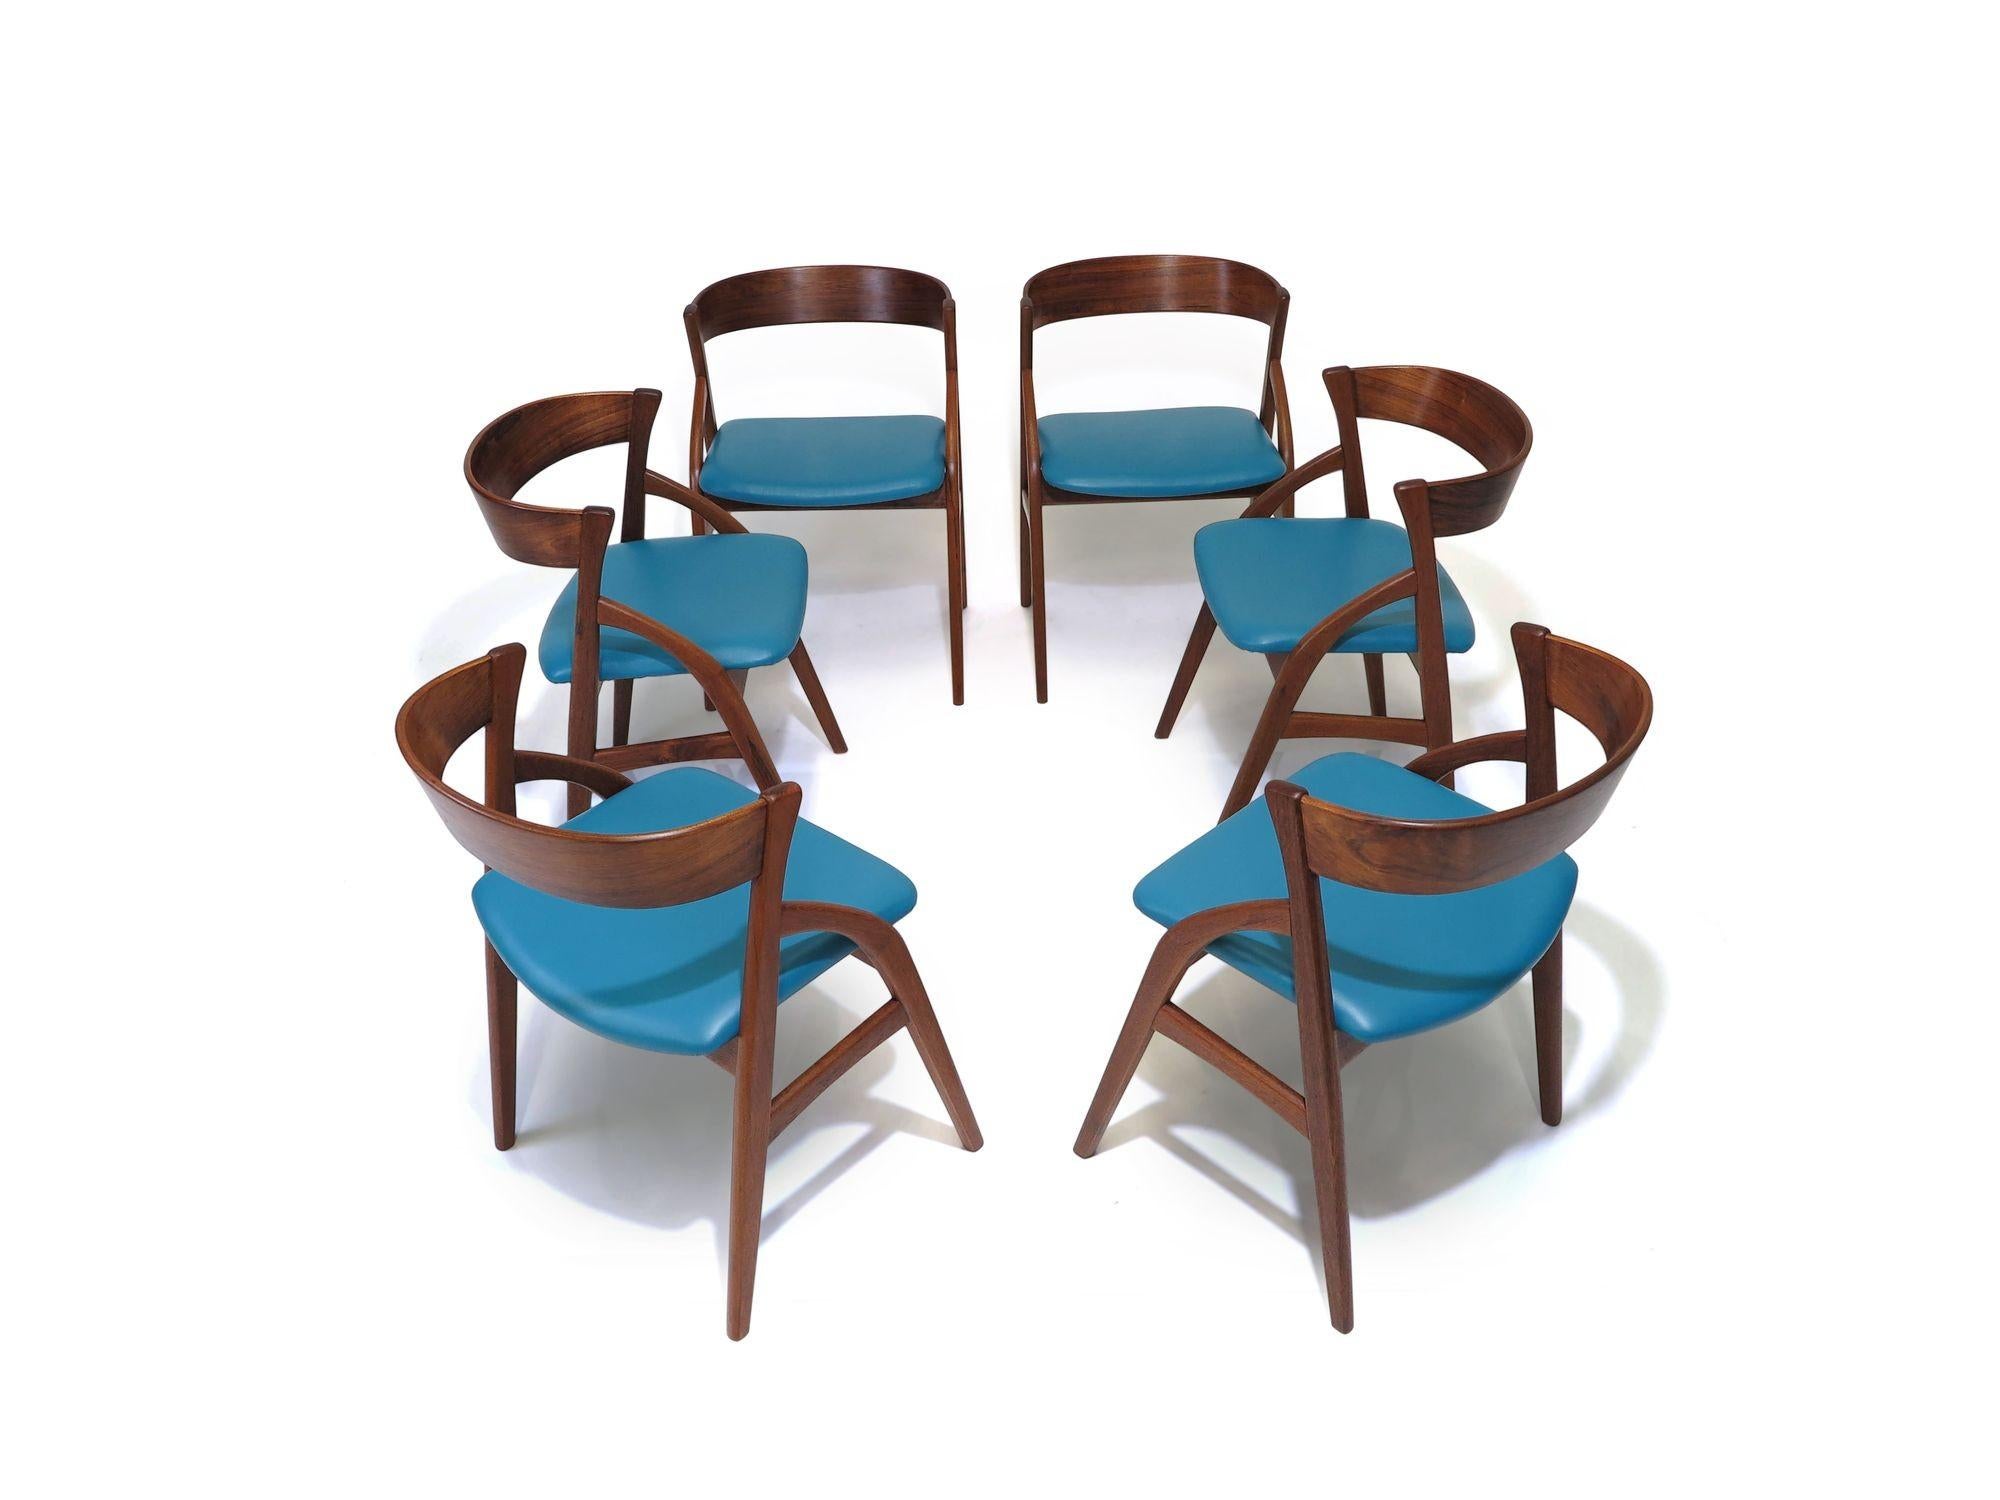 Ensemble de six chaises de salle à manger en bois de rose danois du milieu du siècle, fabriquées à la main avec des cadres arqués et un dossier incurvé spectaculaire. Cadres parfaitement restaurés et nouvellement recouverts de cuir bleu. Les